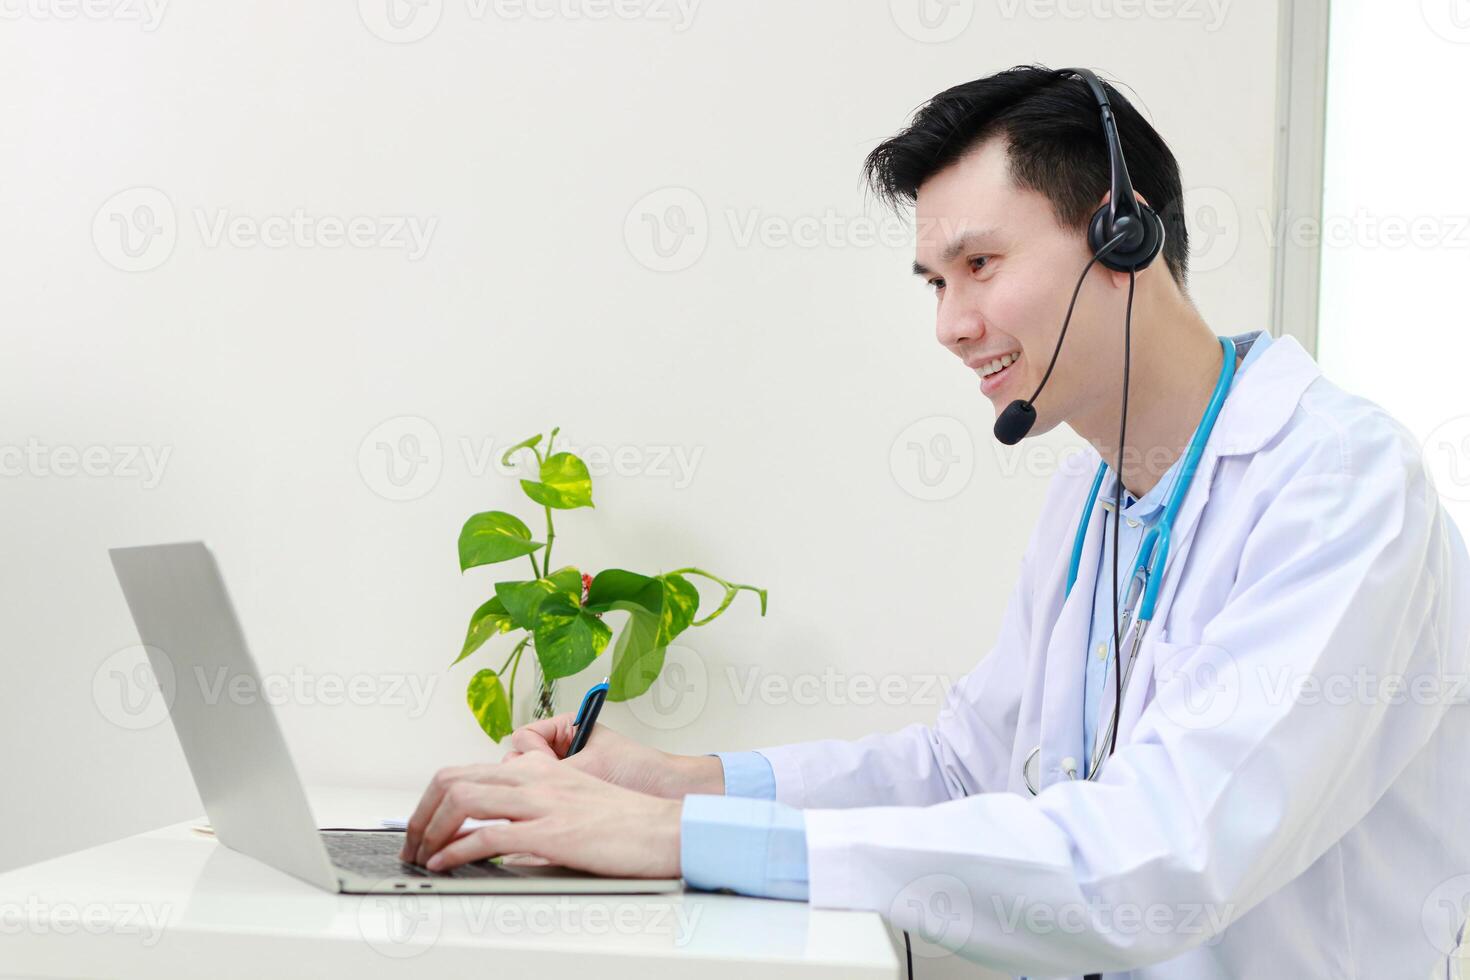 asiático masculino médico sonriente hermosamente Proporcionar tratamiento servicios para pacientes con en línea conversaciones vía el Internet en ordenador portátil ordenadores. en línea médico concepto. Copiar espacio foto